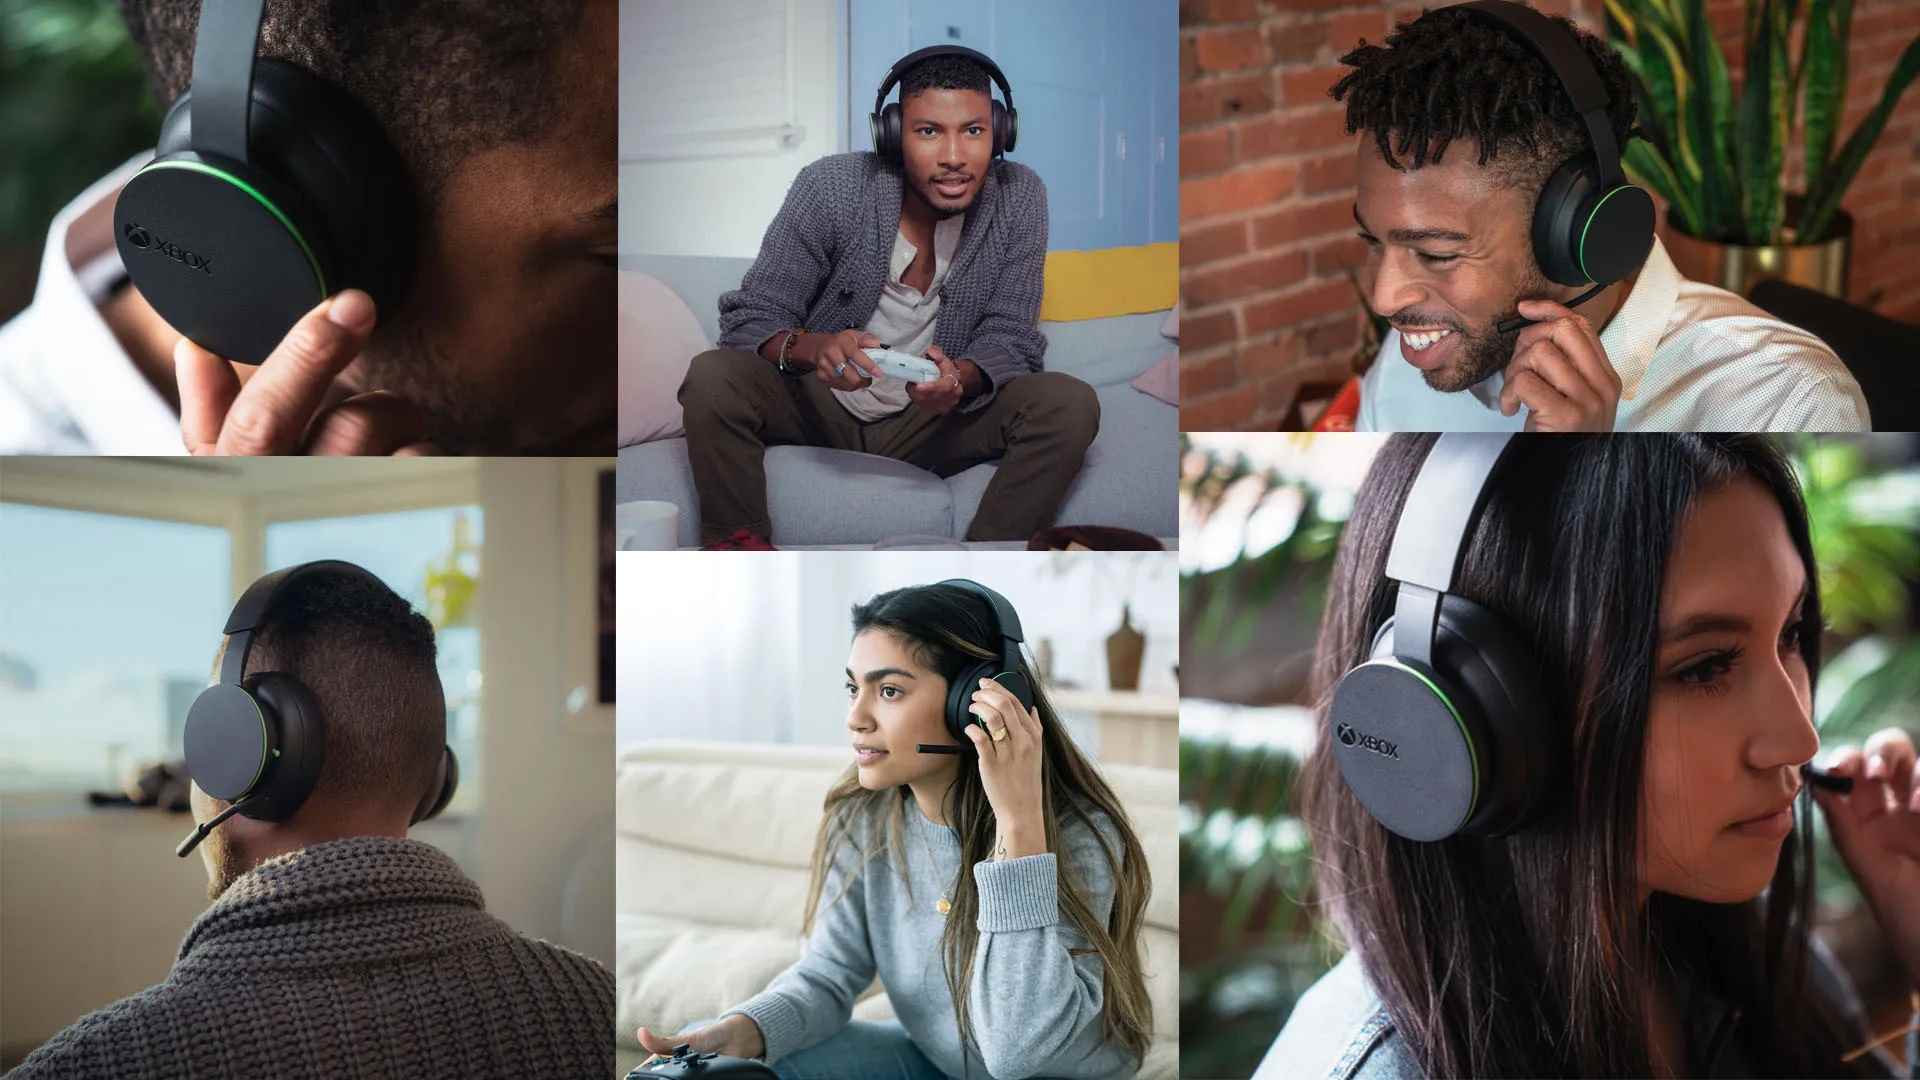 Xbox kablosuz kulaklık takan erkek ve kadın oyuncuların montaj görüntüsü